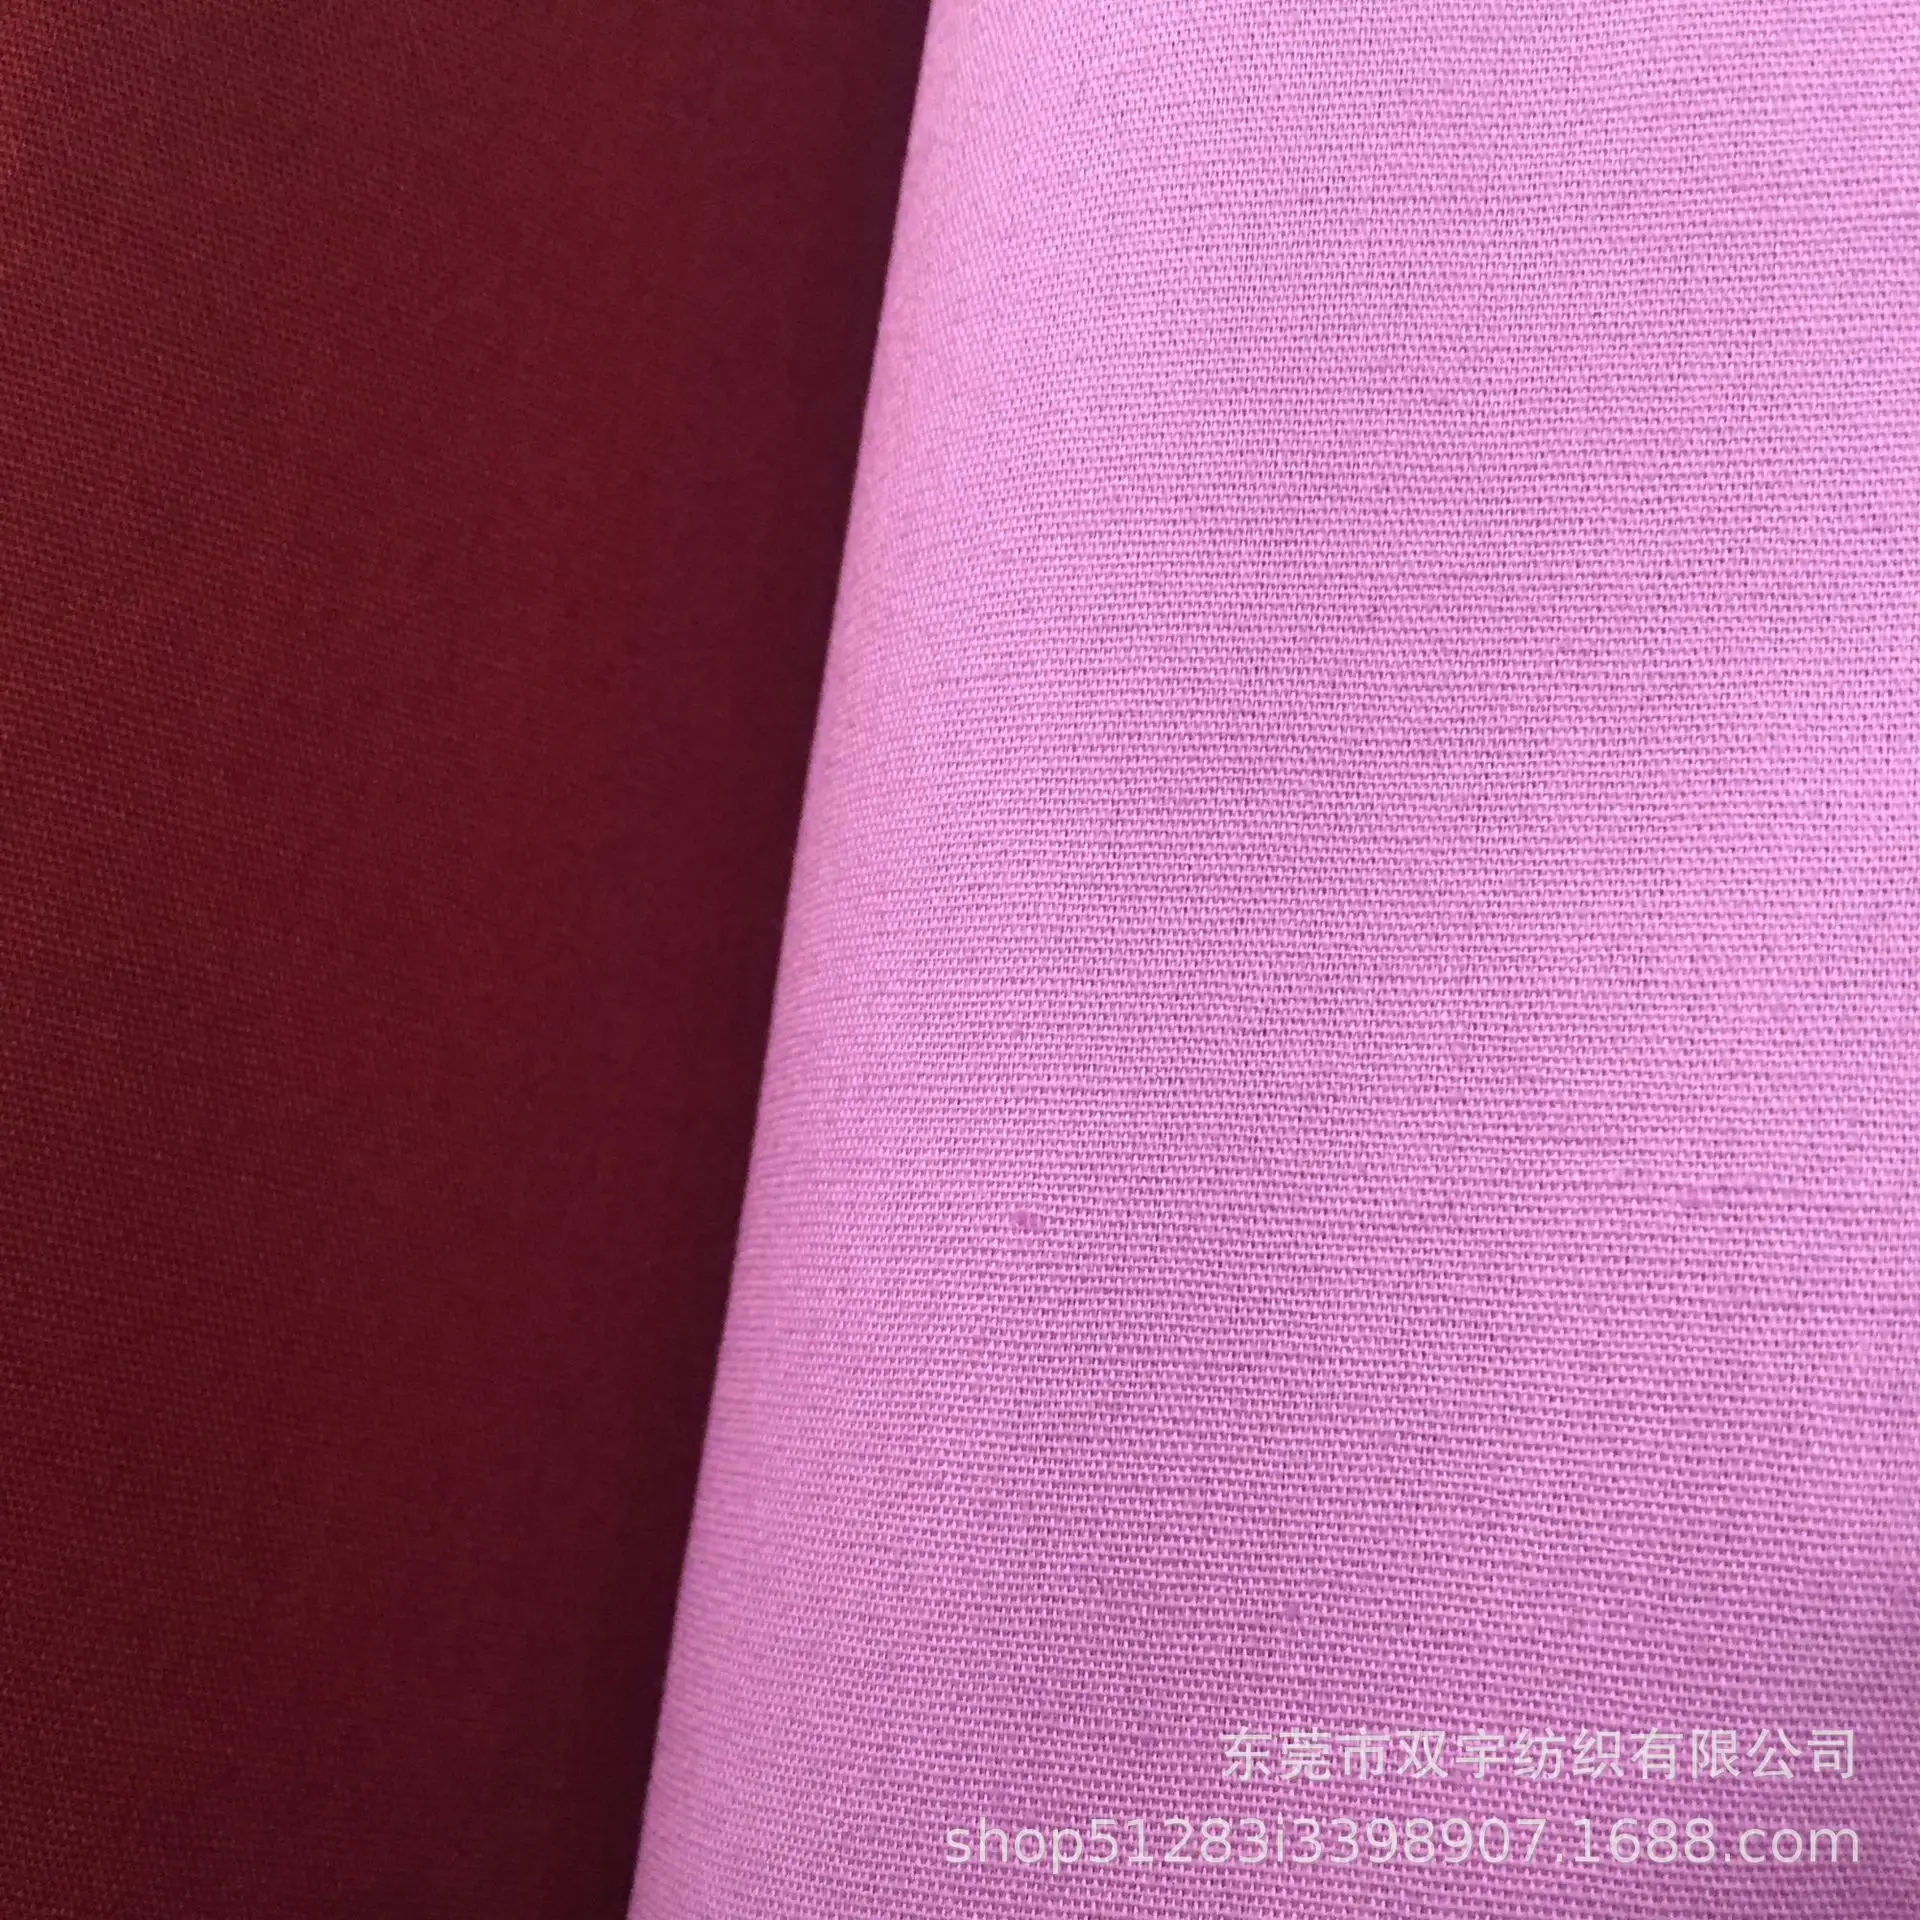 ผ้าปอปลินผ้าฝ้ายย้อมสีทึบสำหรับเสื้อผ้าผ้าย้อมสีรีแอคทีฟ40s แบบ100%